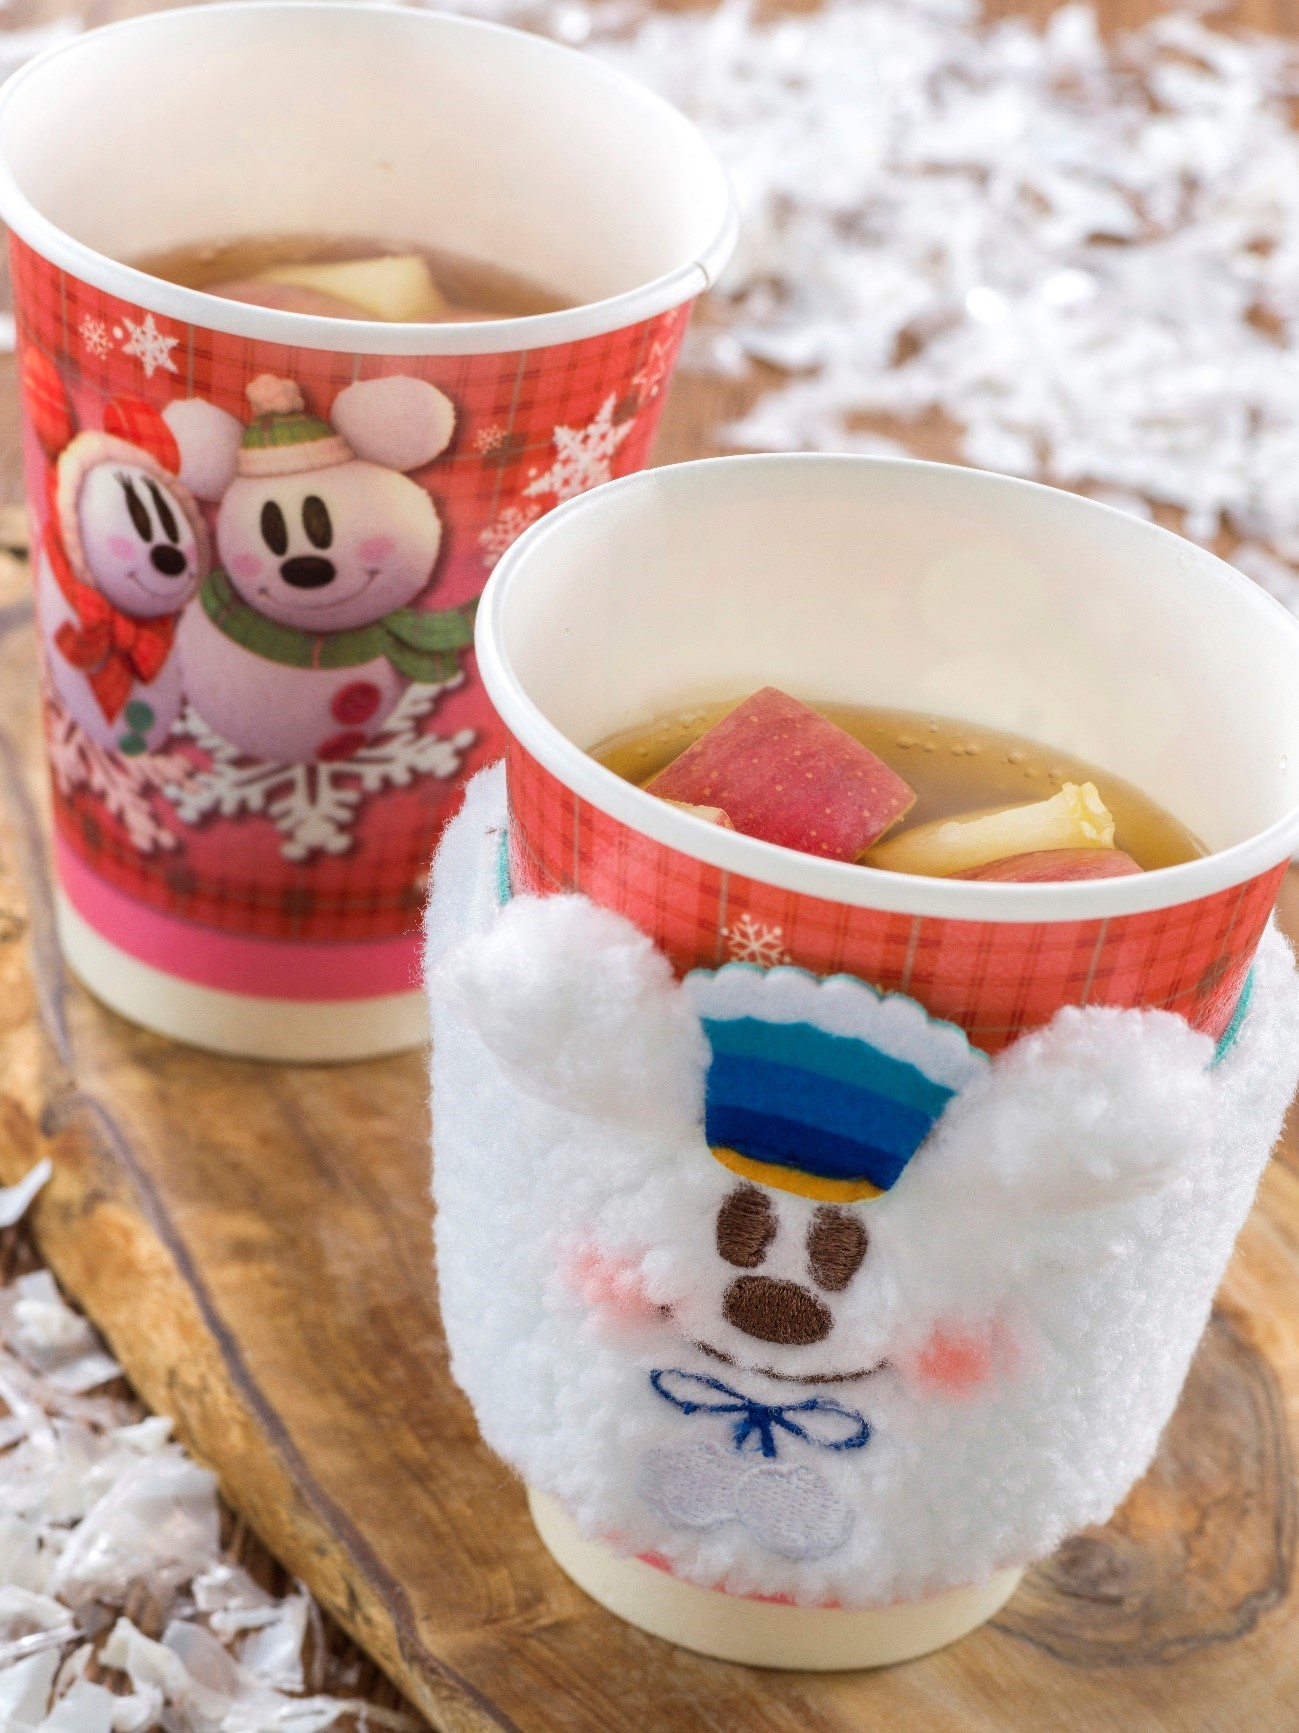 Những món ăn đi kèm với quà lưu niệm có hình Duffy và những người bạn (Tokyo DisneySea®)